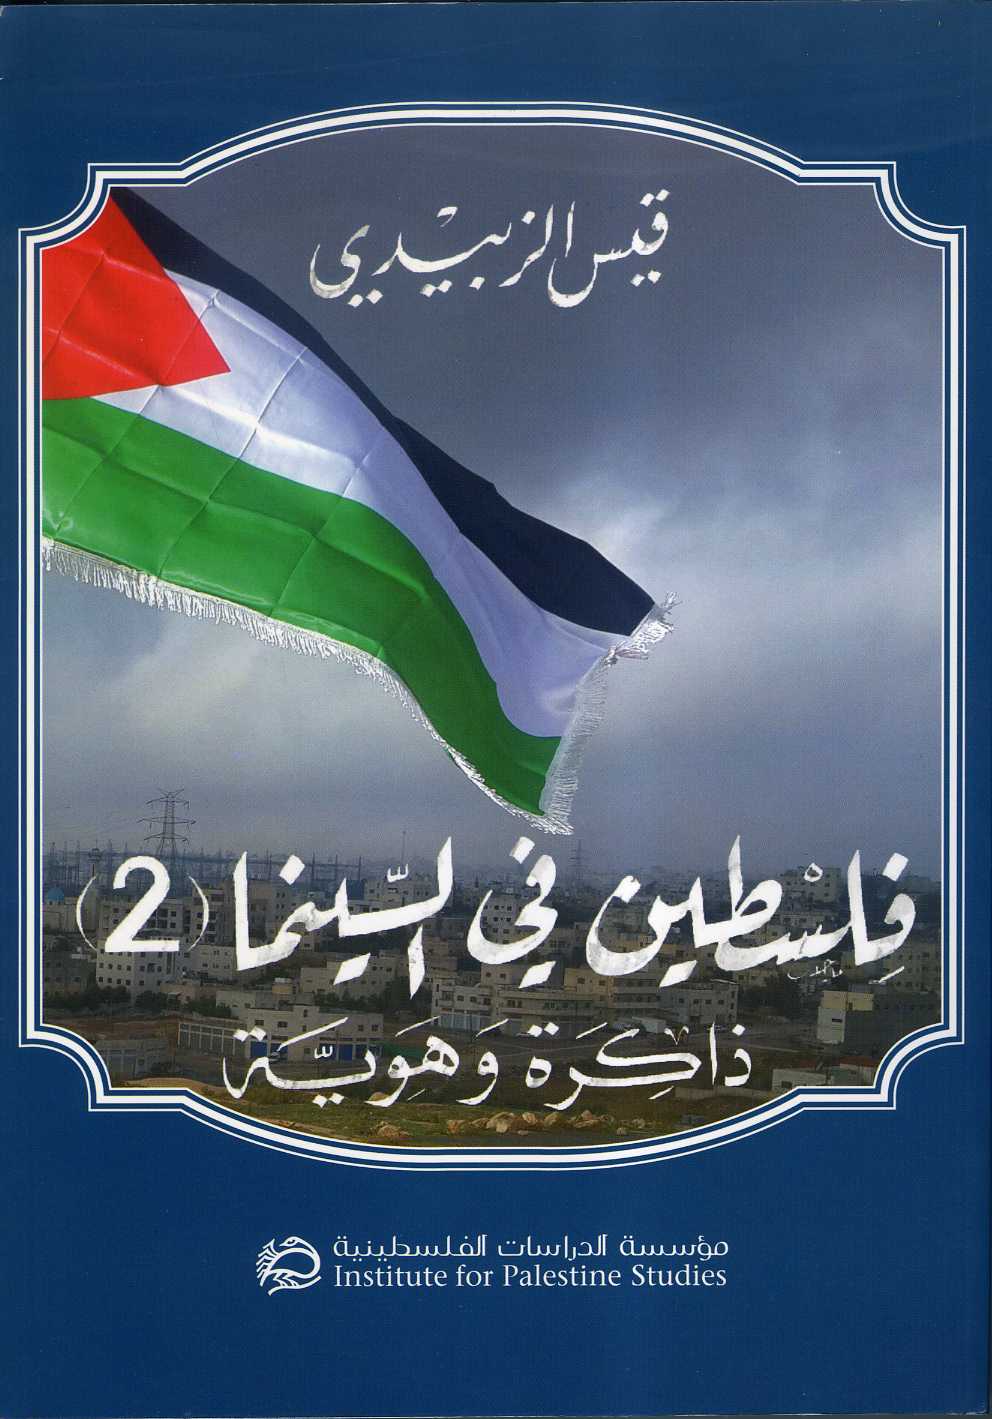 كتاب: فلسطين في السينما (2): ذاكرة وهوية